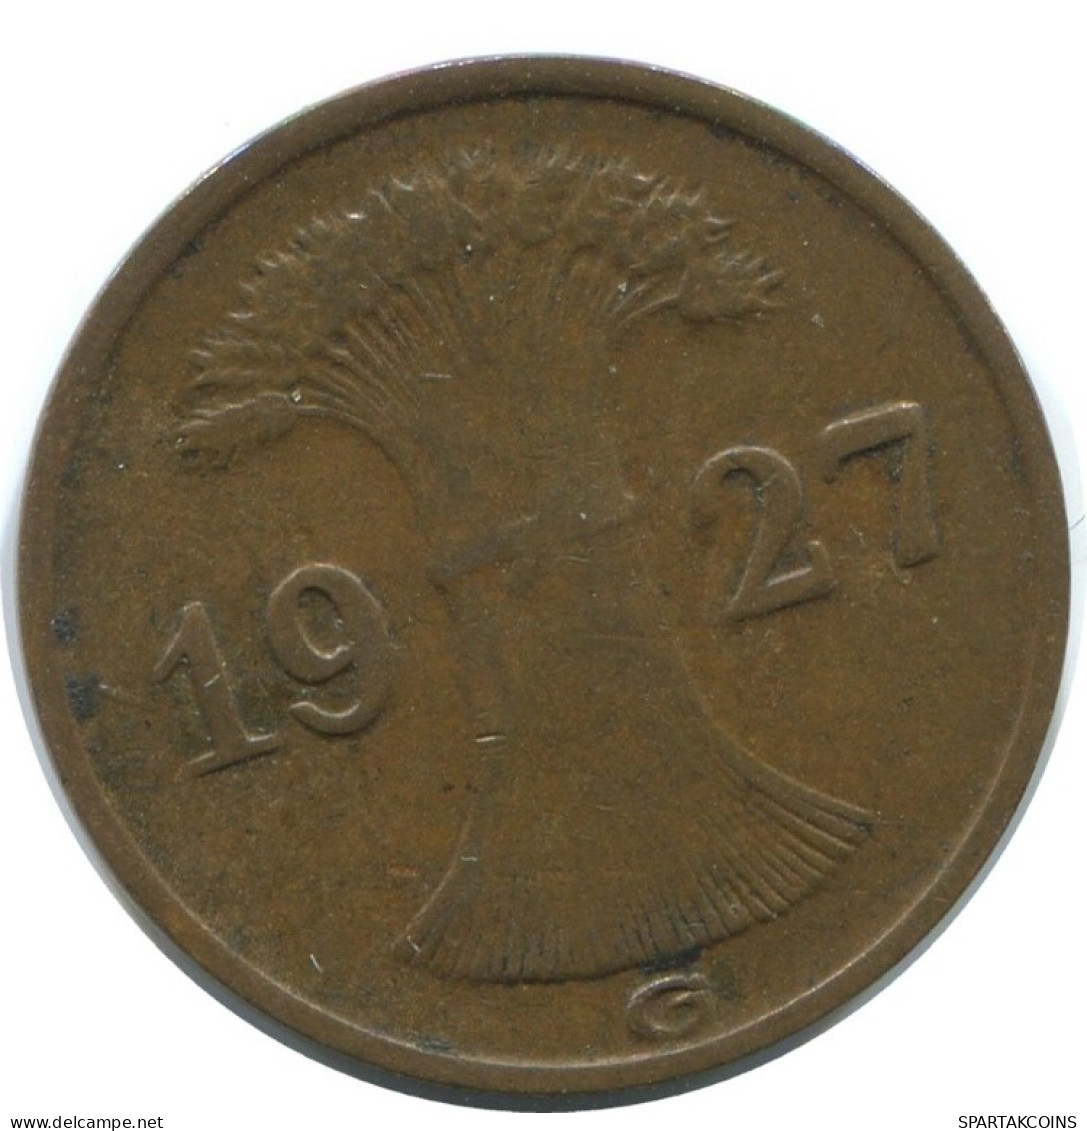 1 REICHSPFENNIG 1927 G DEUTSCHLAND Münze GERMANY #AE236.D.A - 1 Reichspfennig